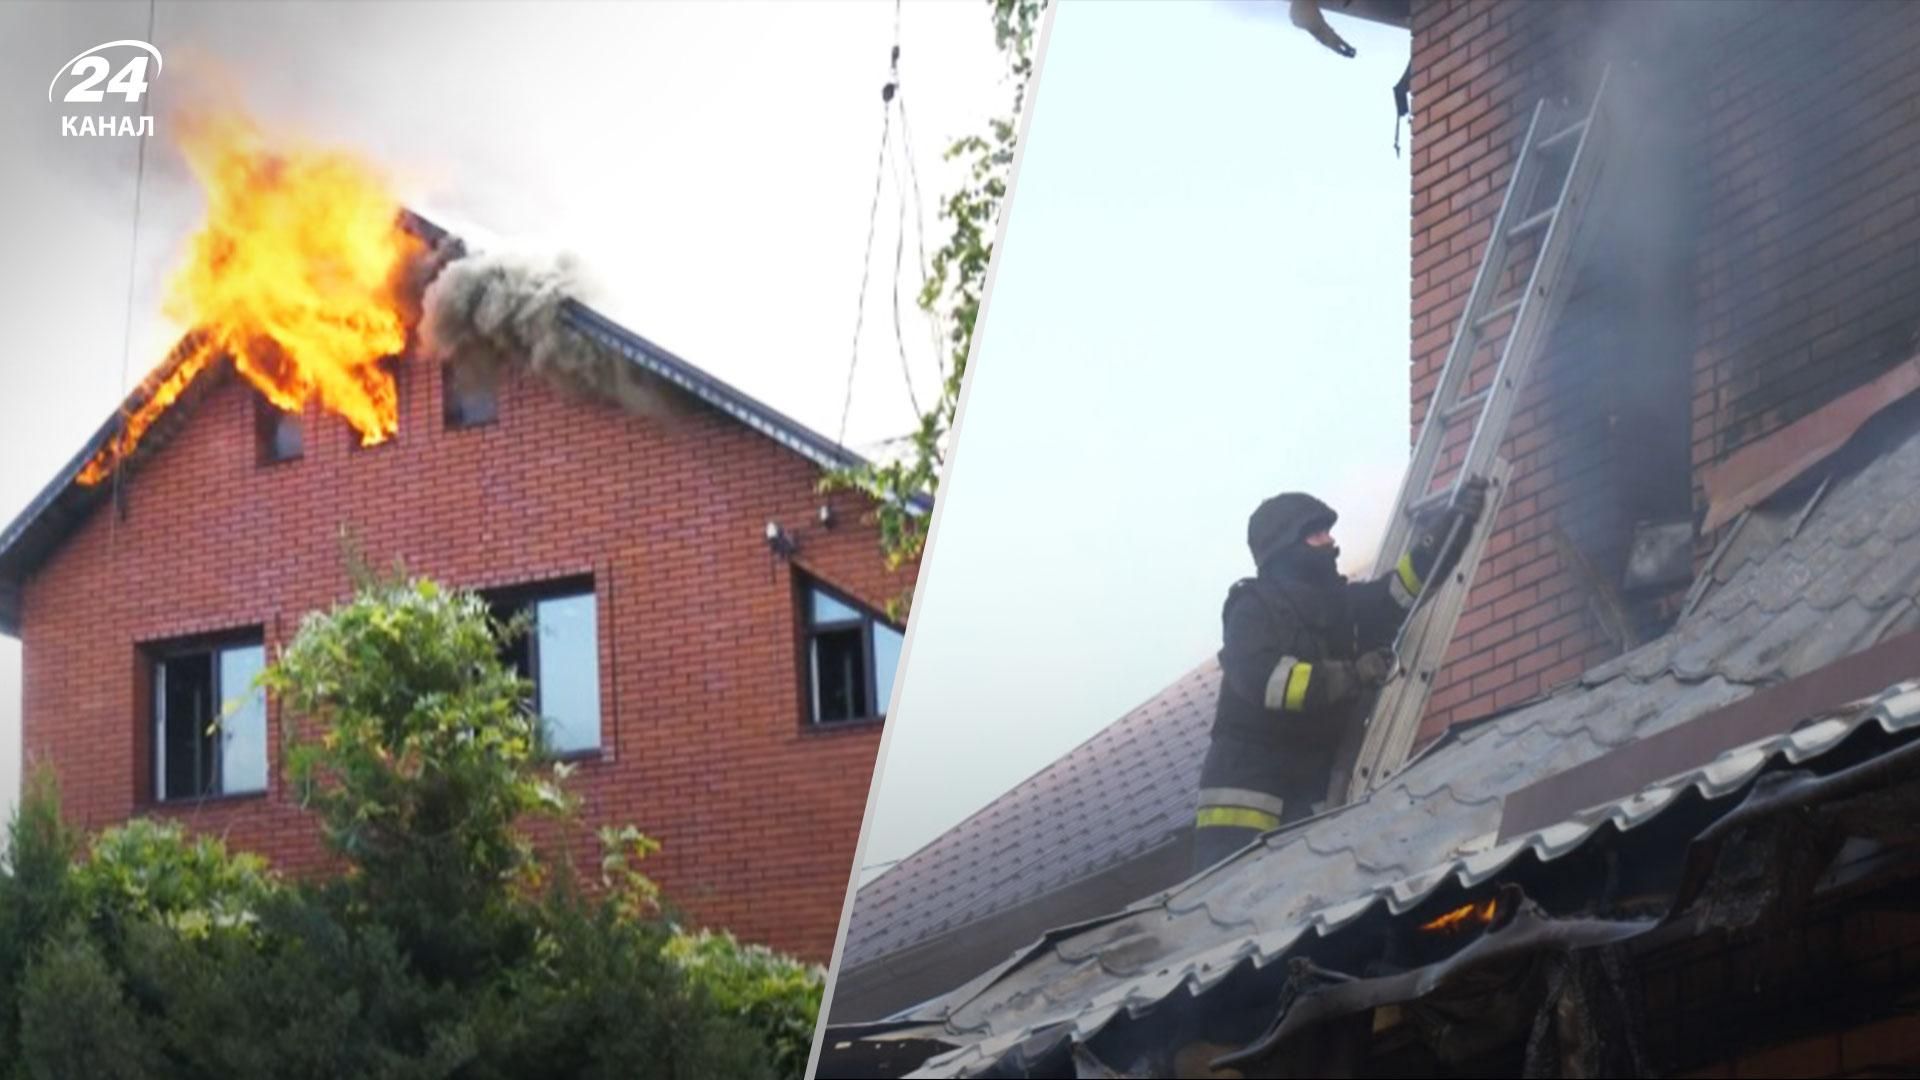 Люди в шоковому стані: жахливі кадри пожежі приватного будинку після атак Росії